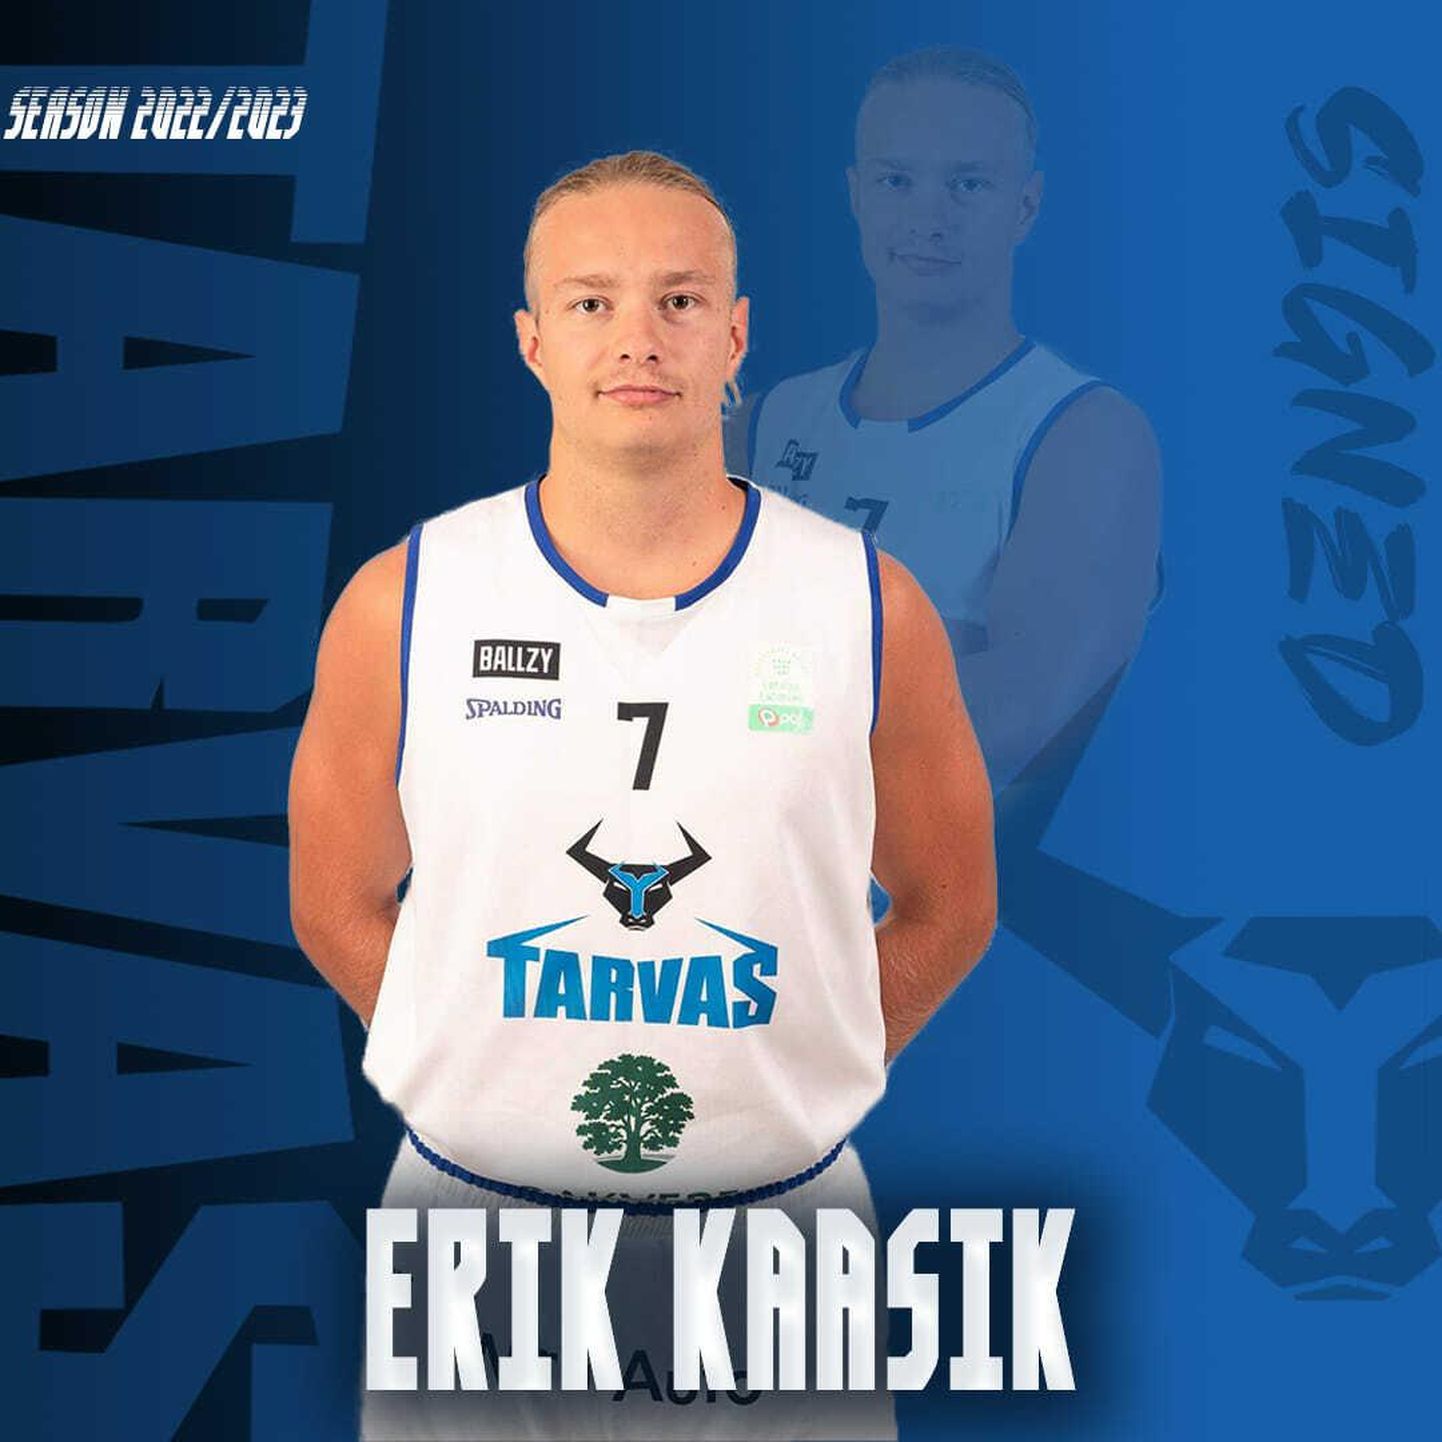 22-aastase ja 182 cm pika tagamehe Erik Kaasiku taasliitumine meeskonnaga aasta alguses mõjus positiivselt nii tiimile kui ka noormehele endale.